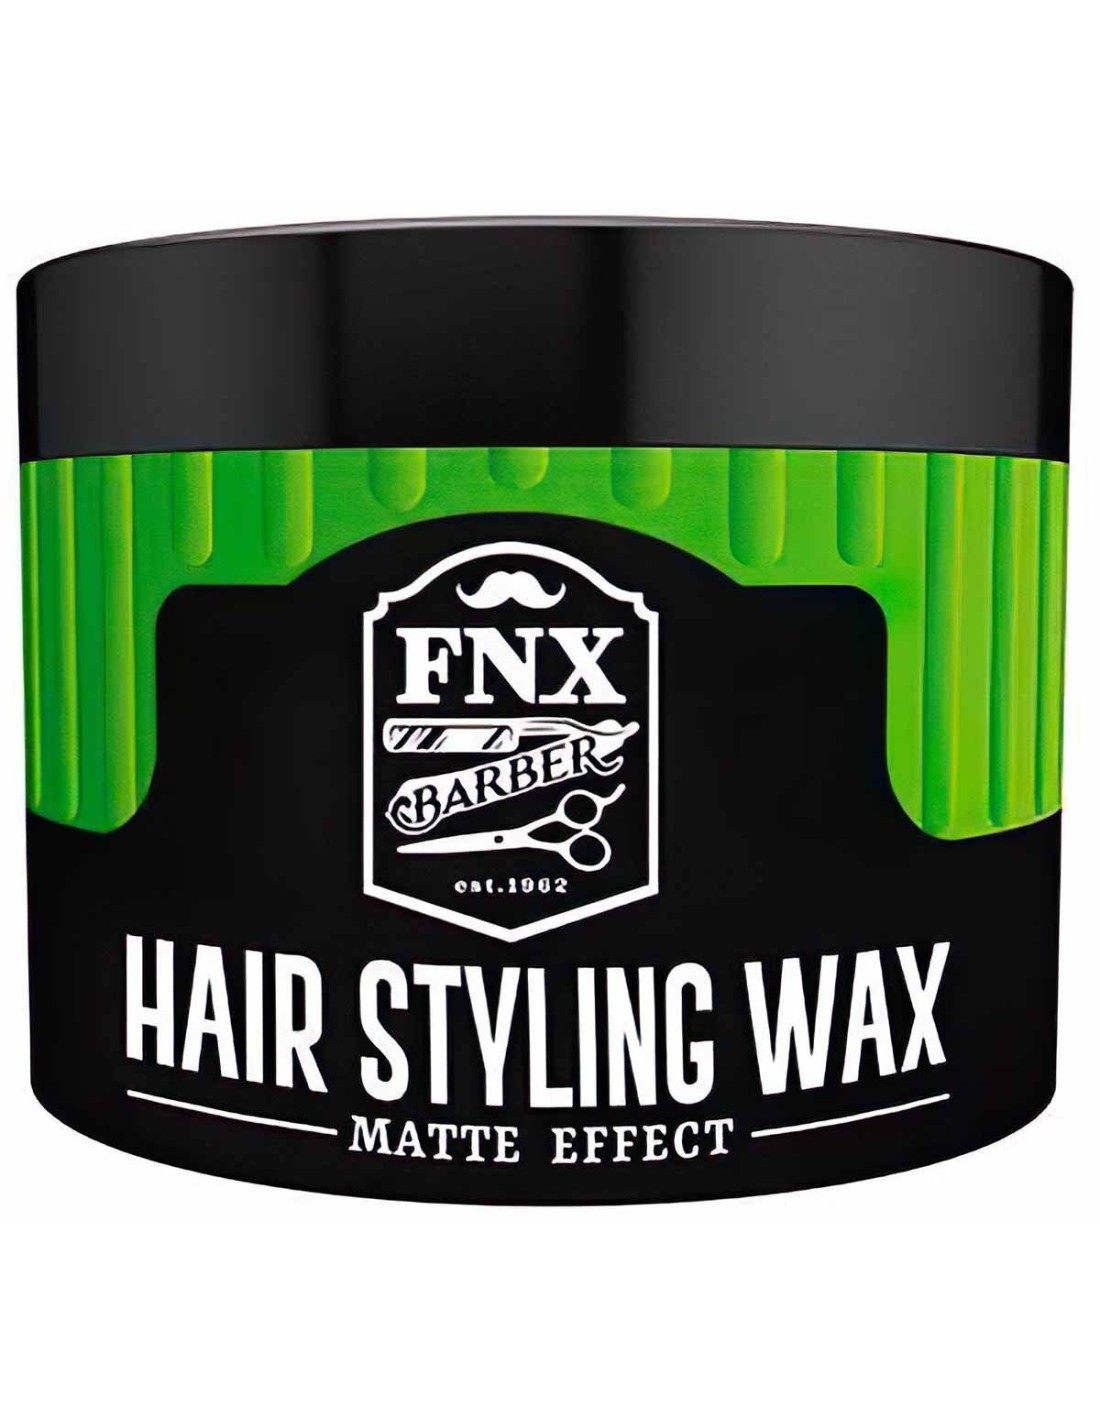 Hair Styling Wax Matte Effect FNX Barber 150ml